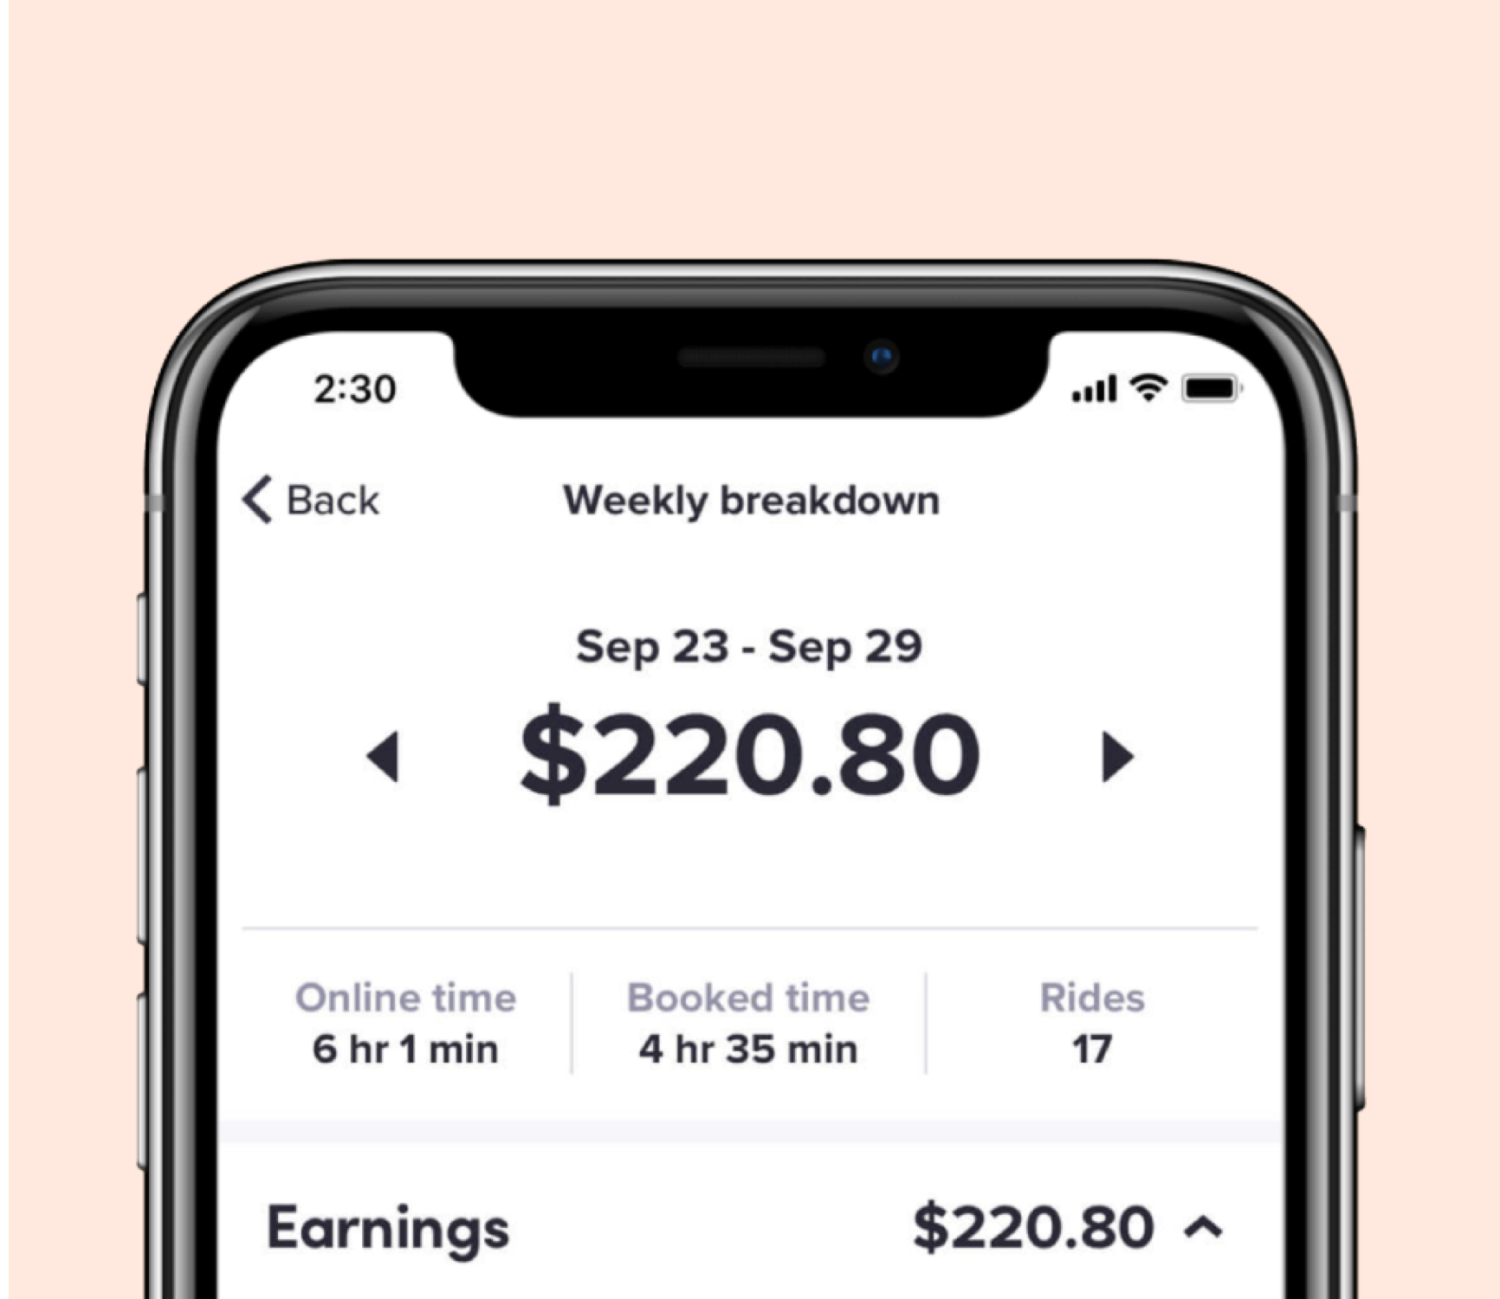 in-app screen of earnings breakdown